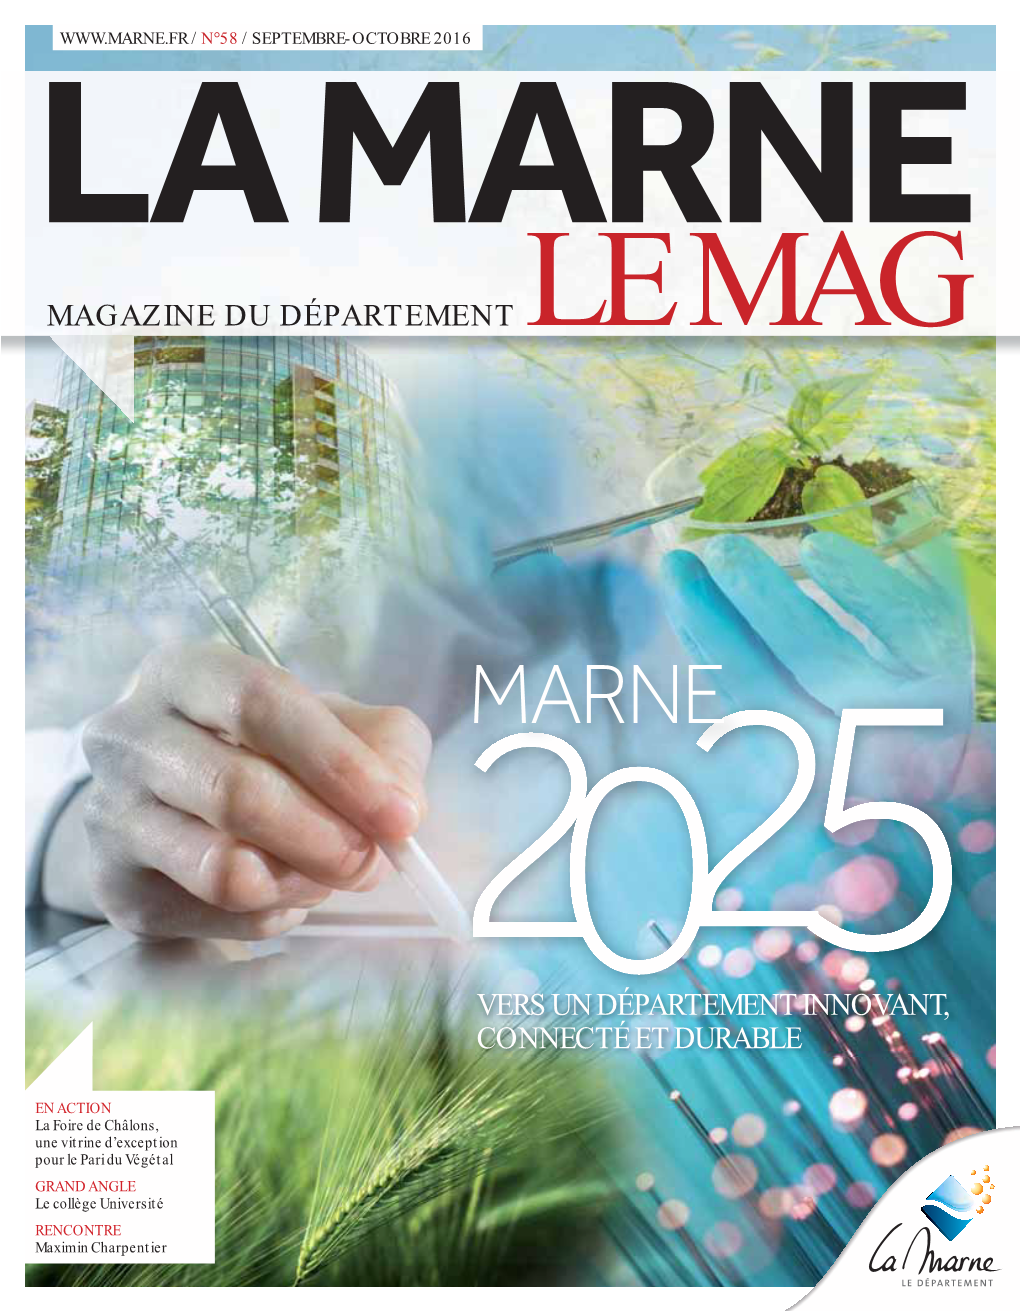 Magazine Du Département Le Mag Vers Un Département